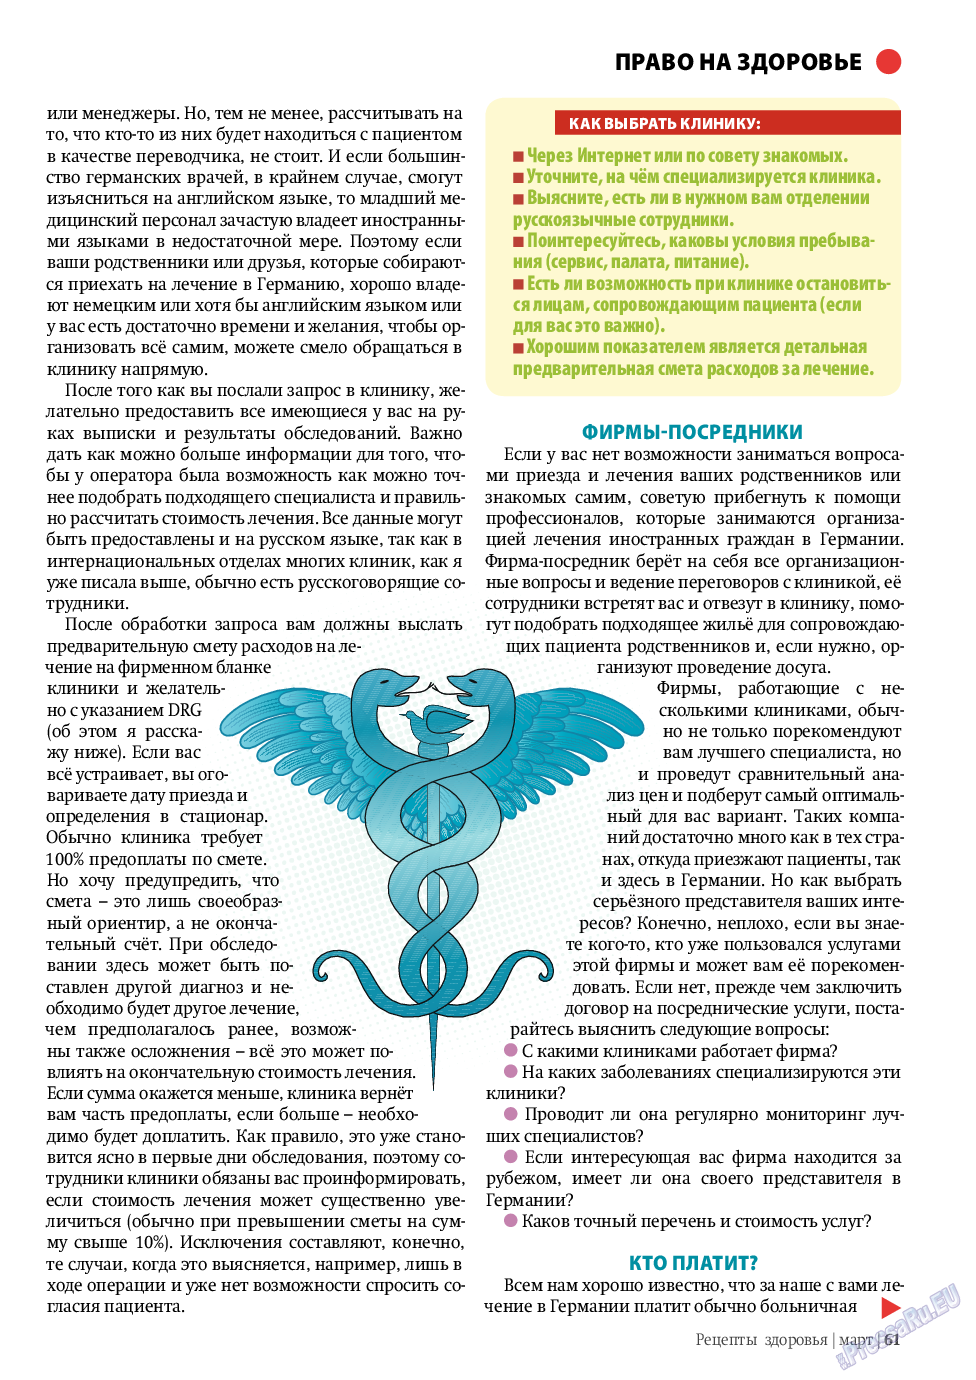 Рецепты здоровья, журнал. 2011 №3 стр.61